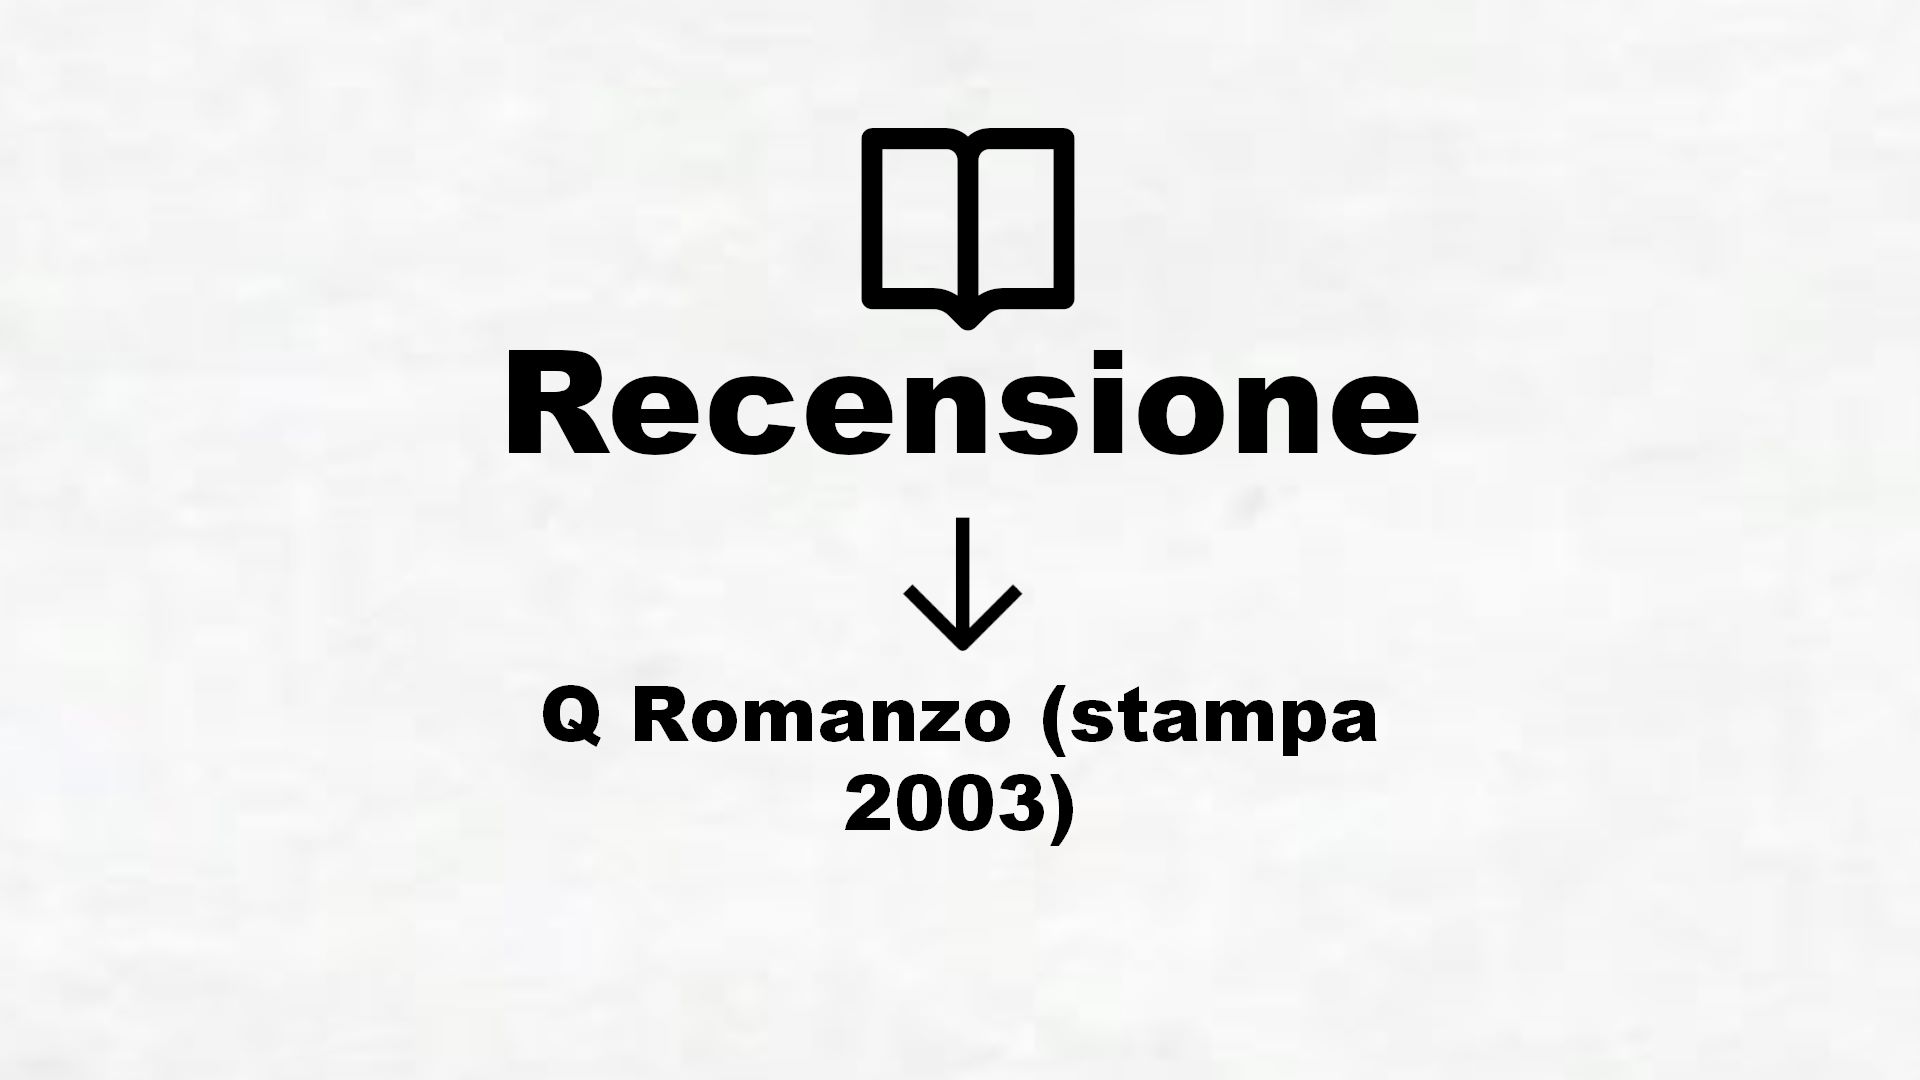 Q Romanzo (stampa 2003) – Recensione Libro